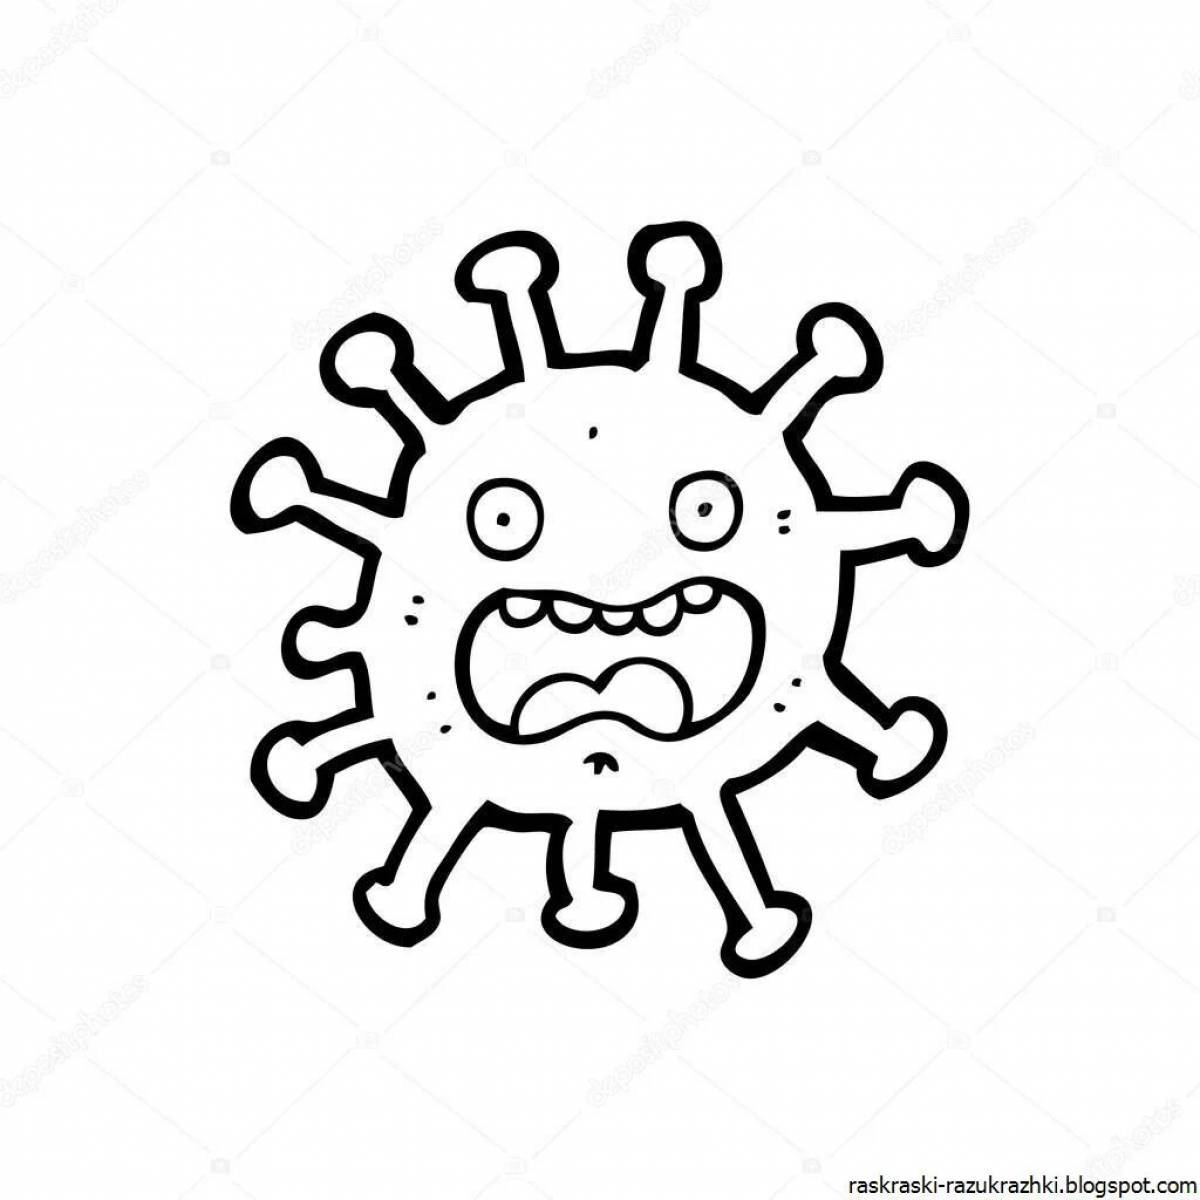 Раскраска А4 Умка Первая раскраска. Вирусы и бактерии, 16стр. 978-5-506-04478-9